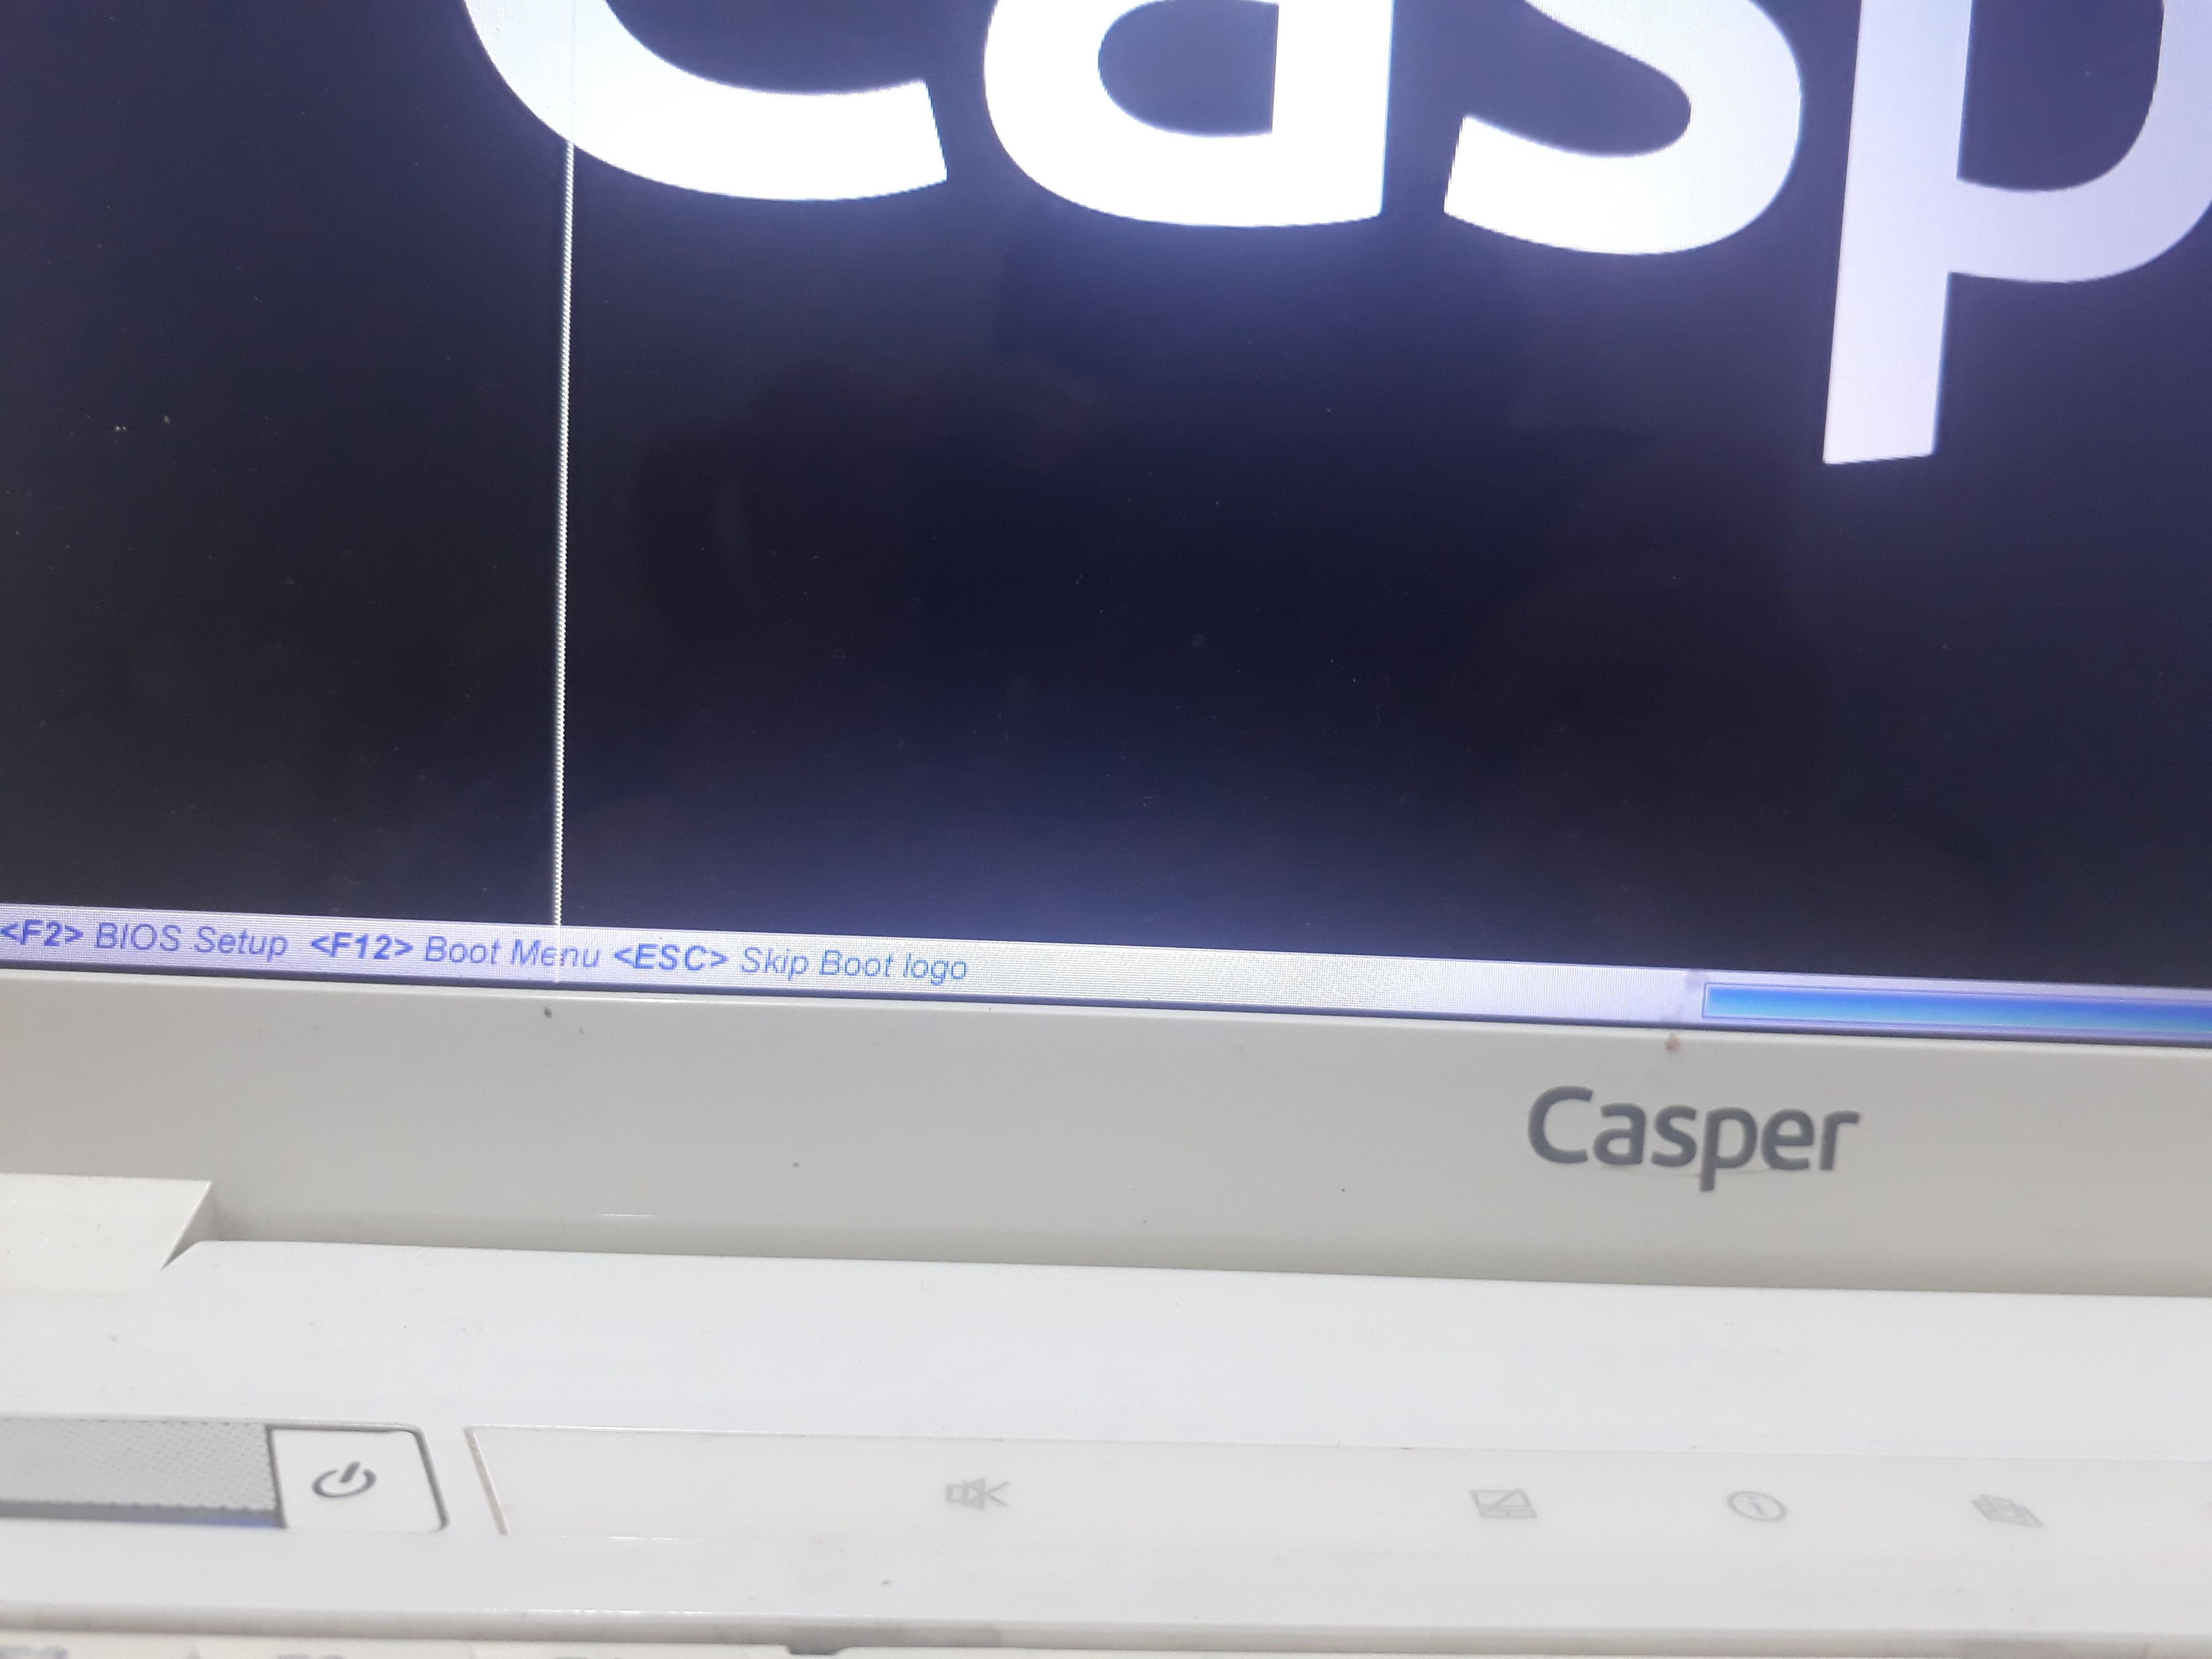 Çözüldü: Dizüstü Casper yazısında kalıyor | Technopat Sosyal